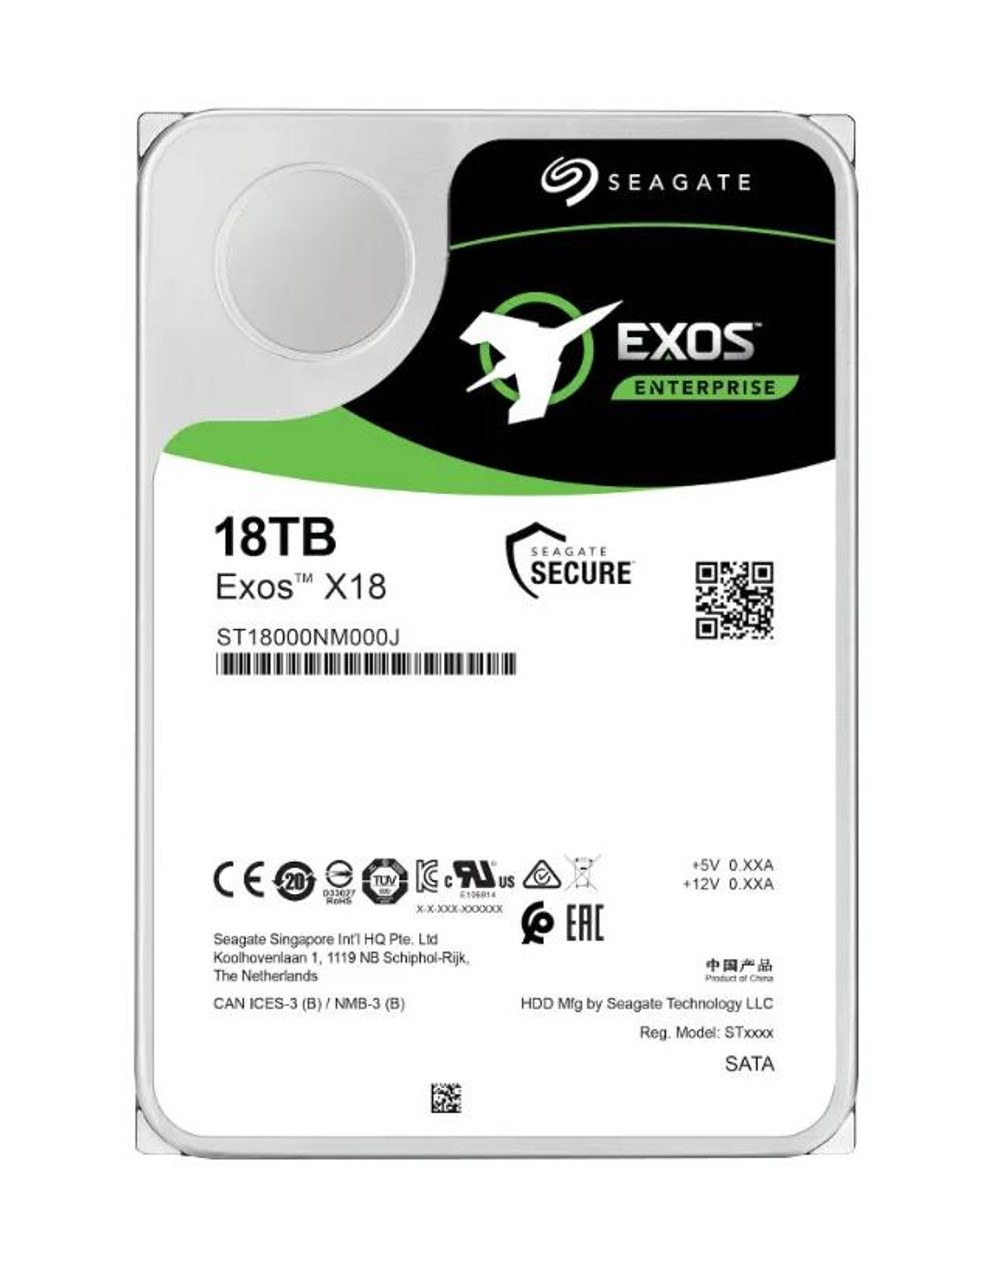 Seagate Exos 2x18 18TB 7200RPM SAS 12Gbps (512e) 3.5-inch Hard Disk Drive